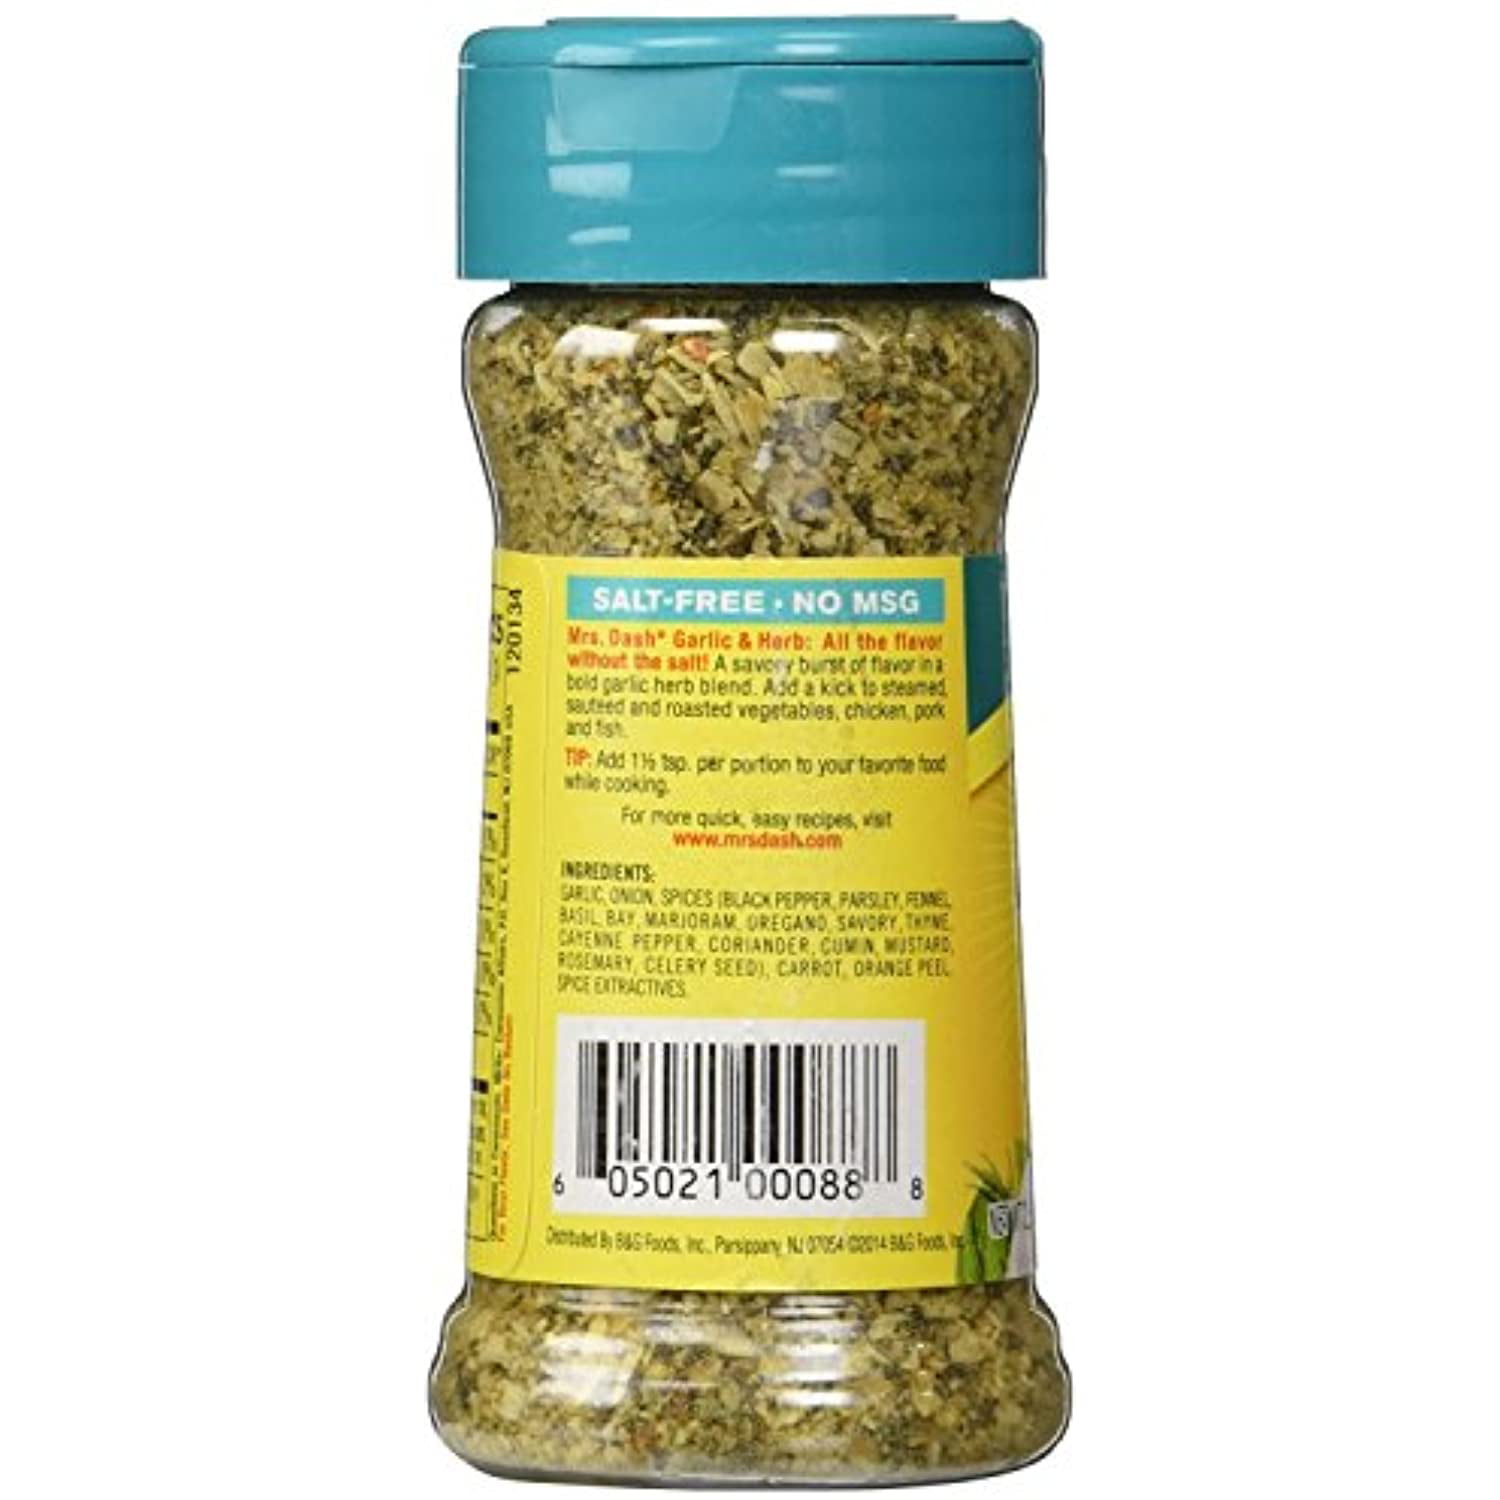 Mrs Dash Marinade, Garlic Herb - 12 fl oz